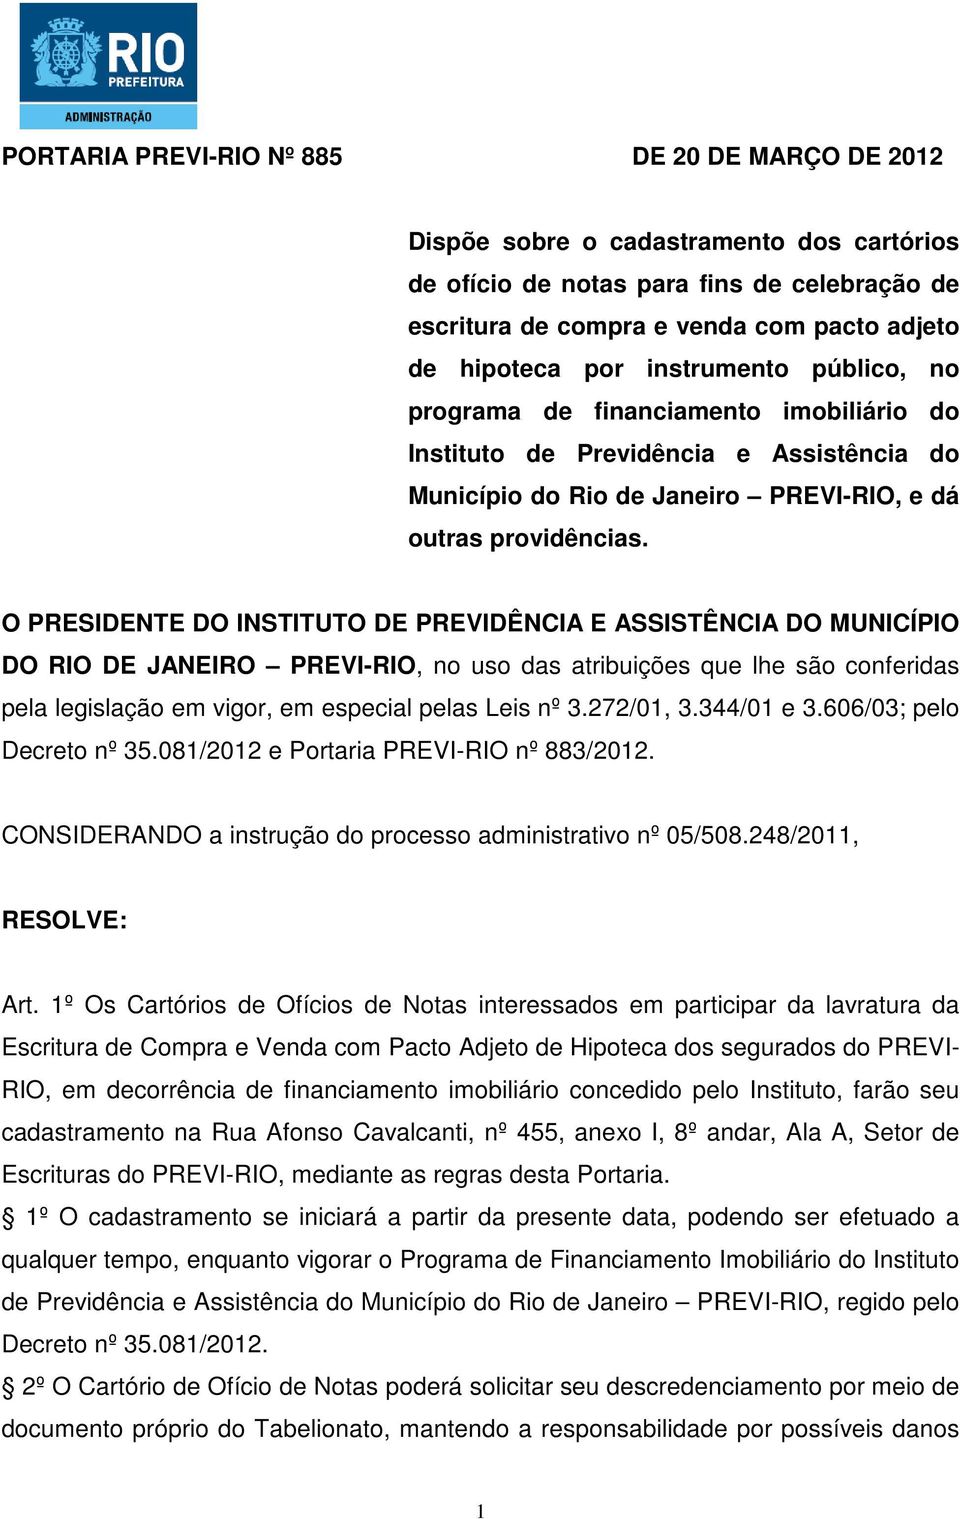 O PRESIDENTE DO INSTITUTO DE PREVIDÊNCIA E ASSISTÊNCIA DO MUNICÍPIO DO RIO DE JANEIRO PREVI-RIO, no uso das atribuições que lhe são conferidas pela legislação em vigor, em especial pelas Leis nº 3.